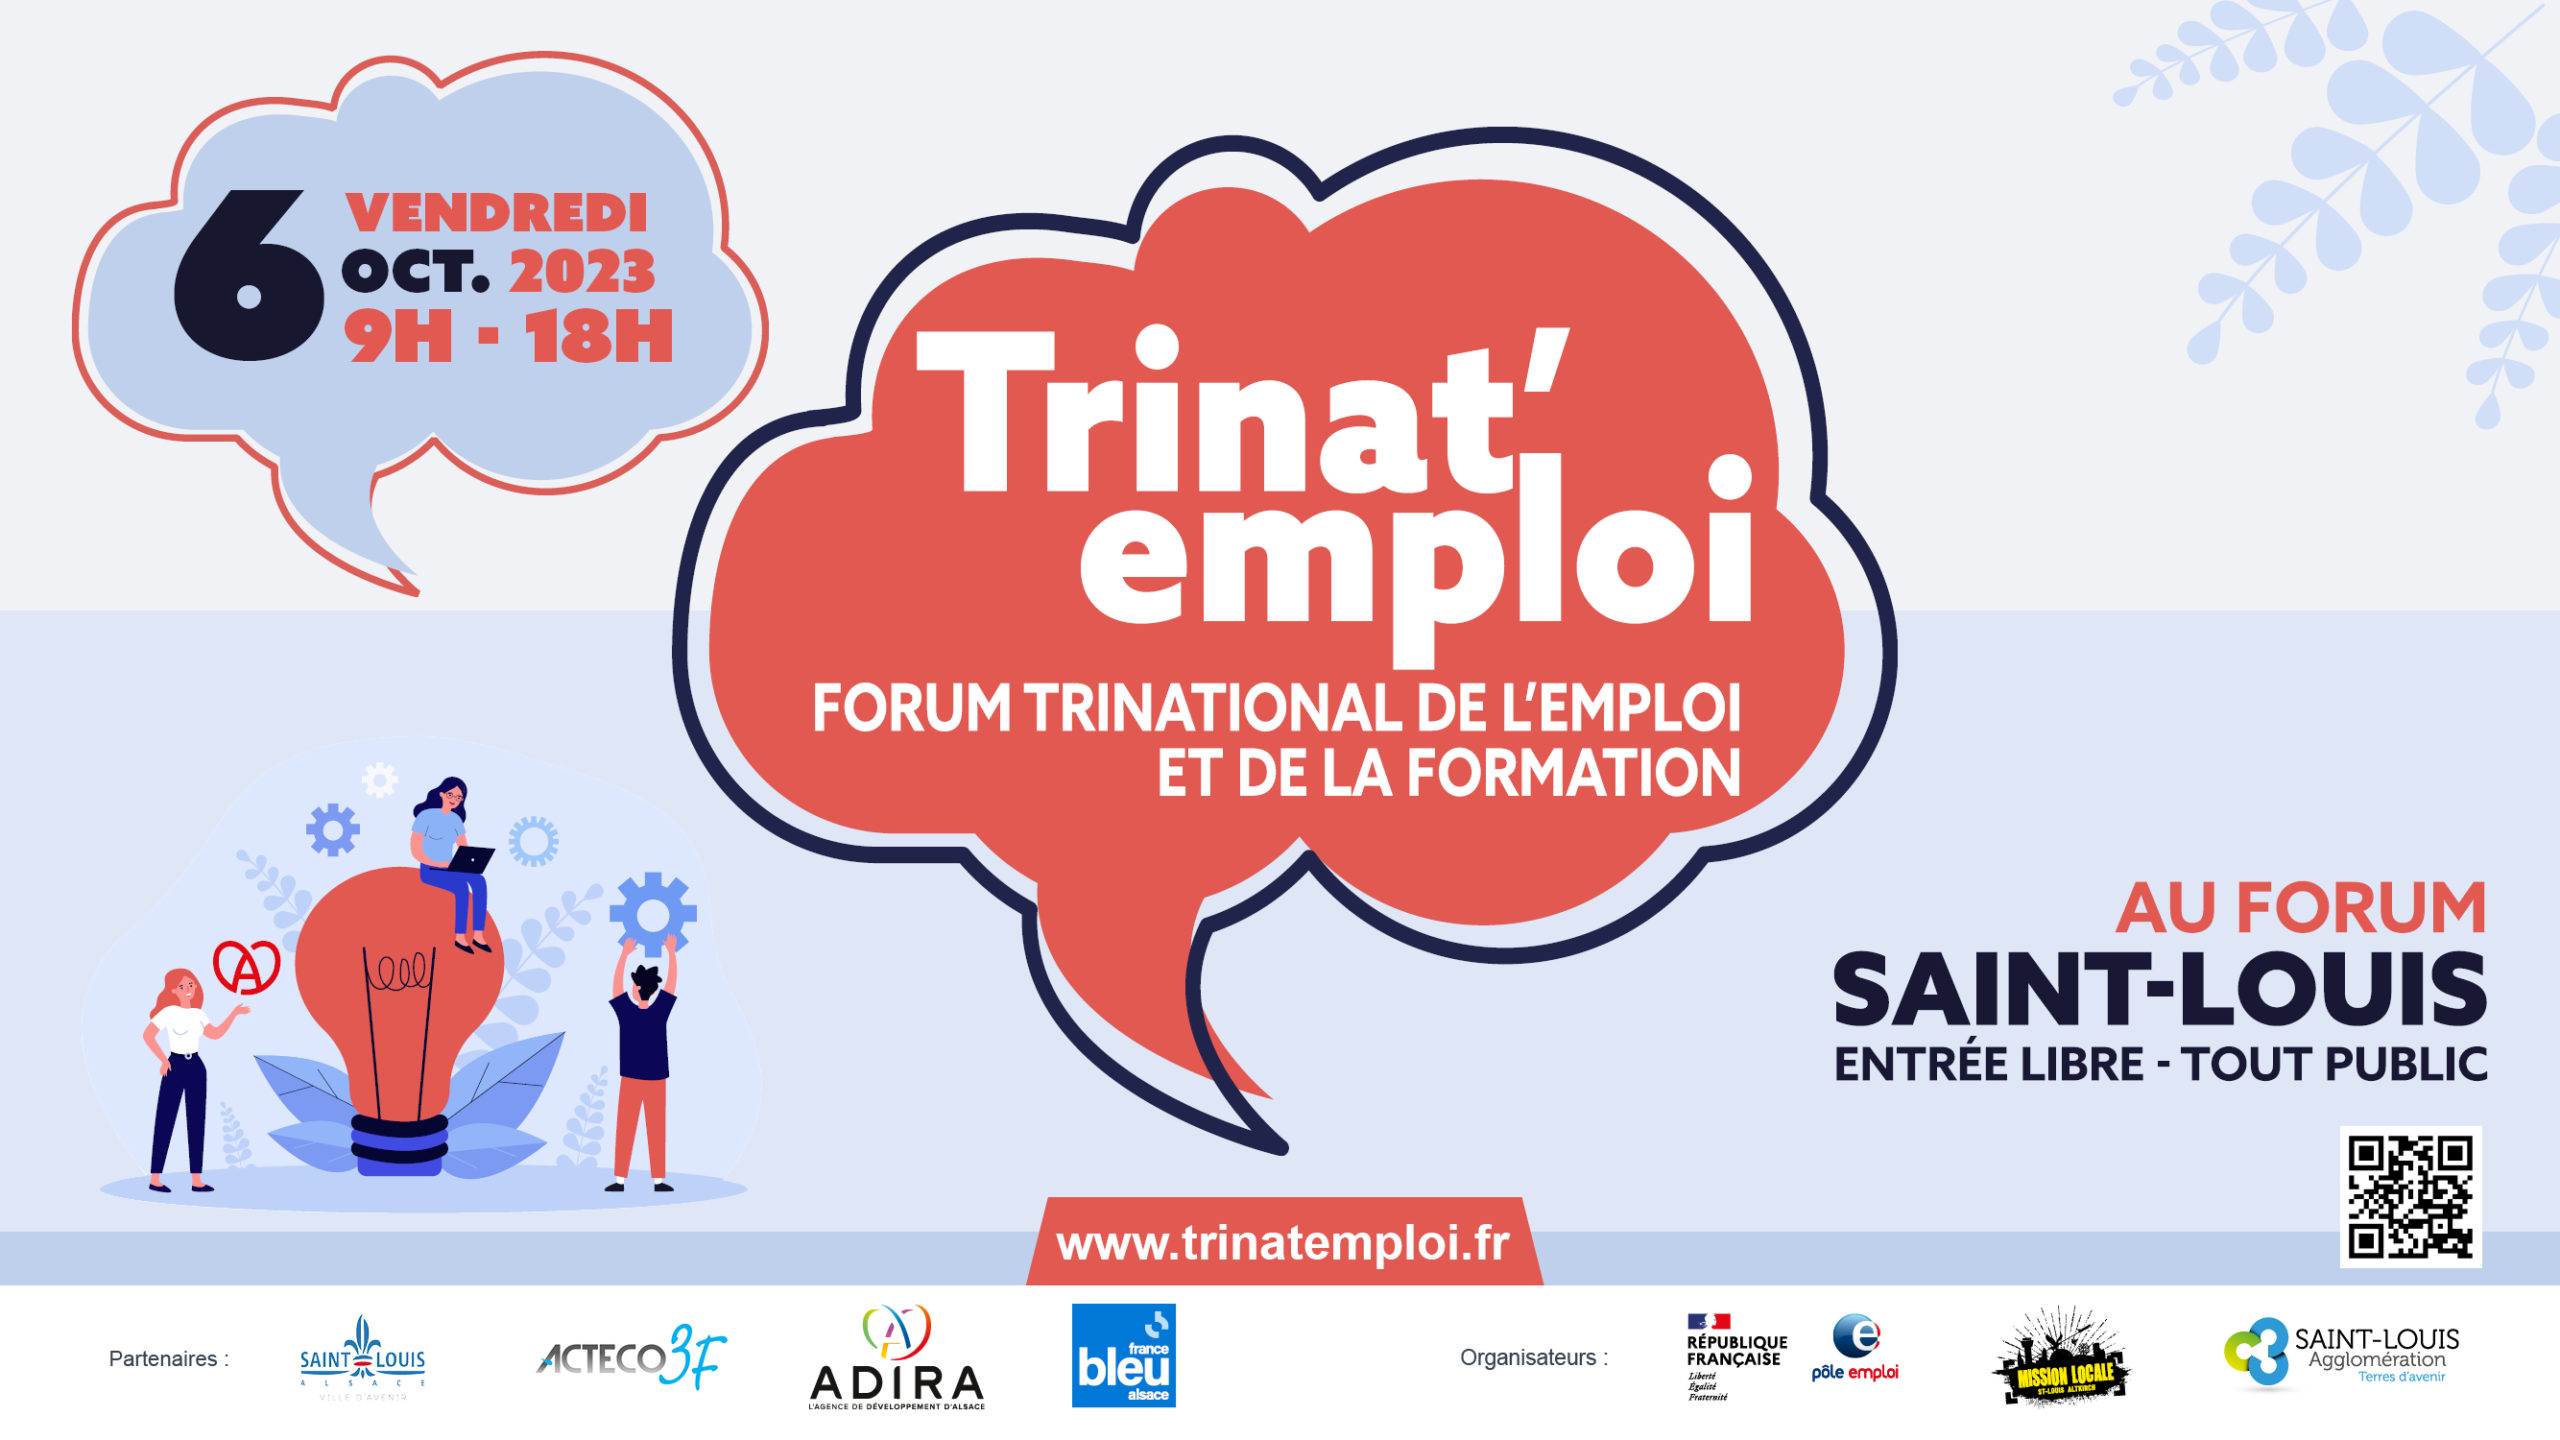 TRINATEMPLOI2023-forum-emploi-sud-alsace-france-suisse-allemagne